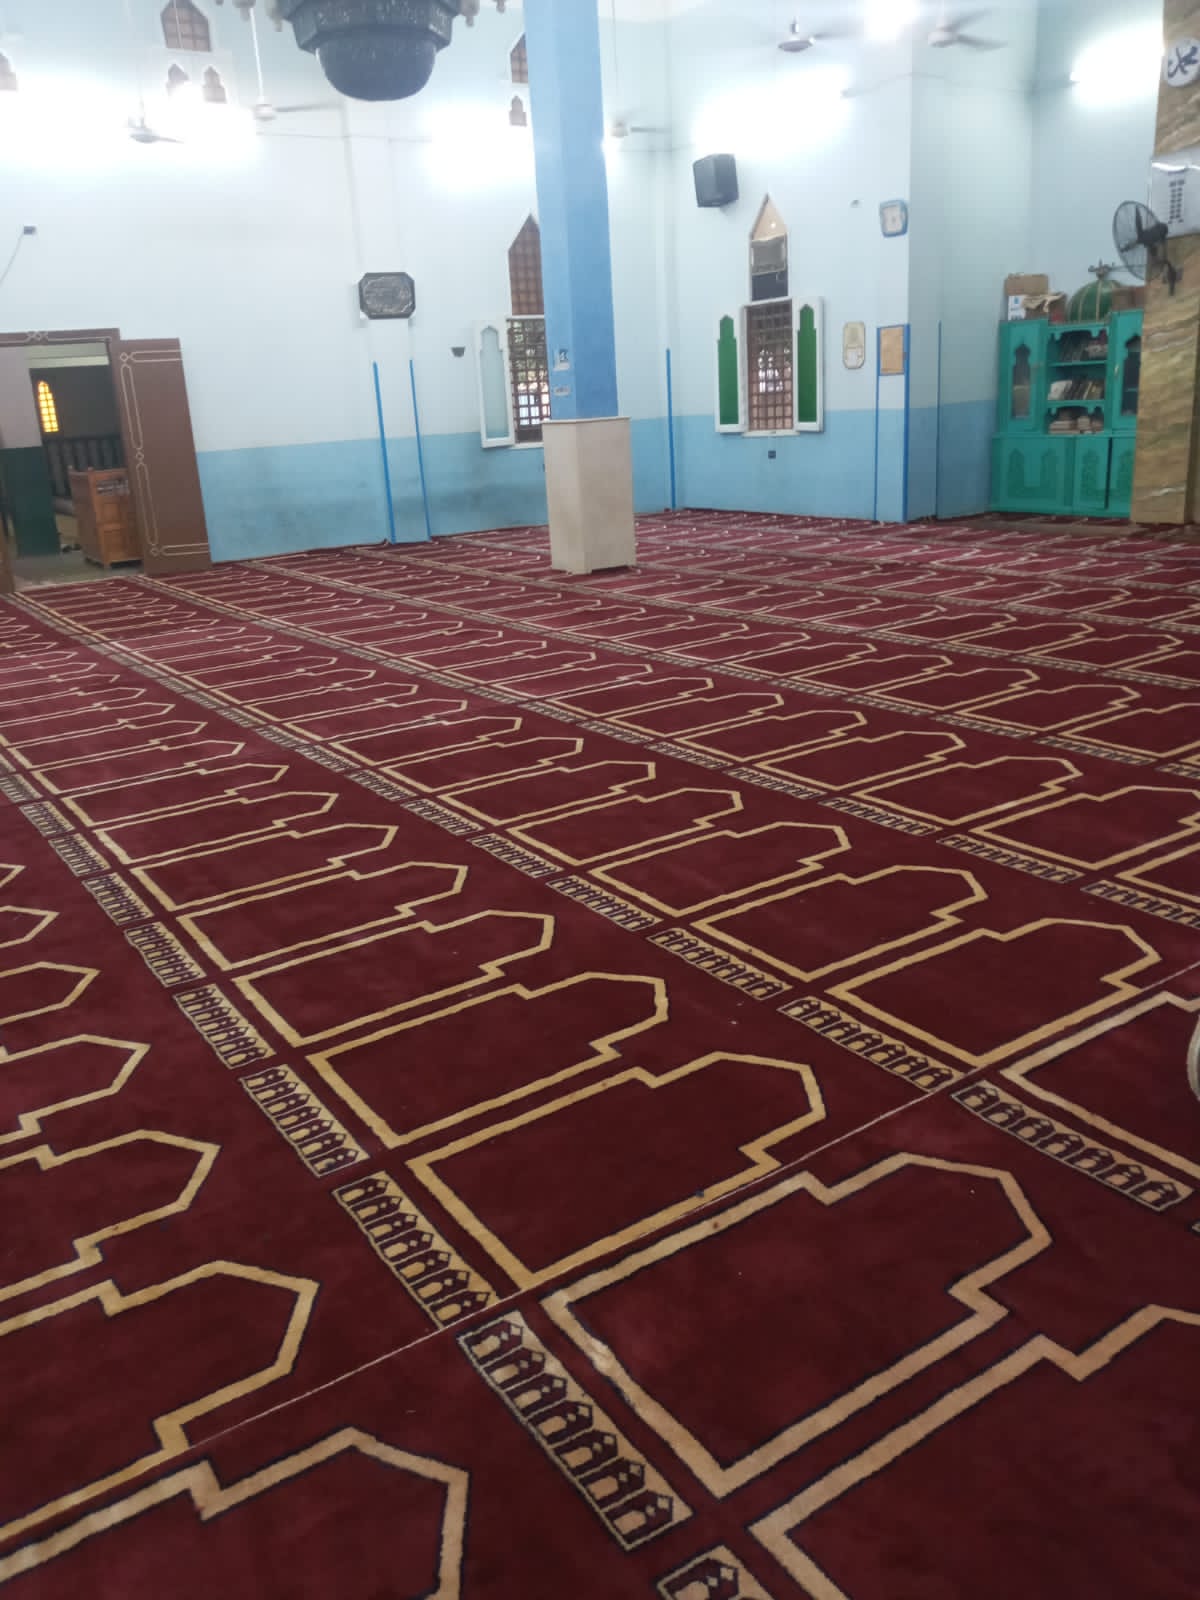 الإنتهاء من فرش مسجد الطاهر الحامدى بالكرنك